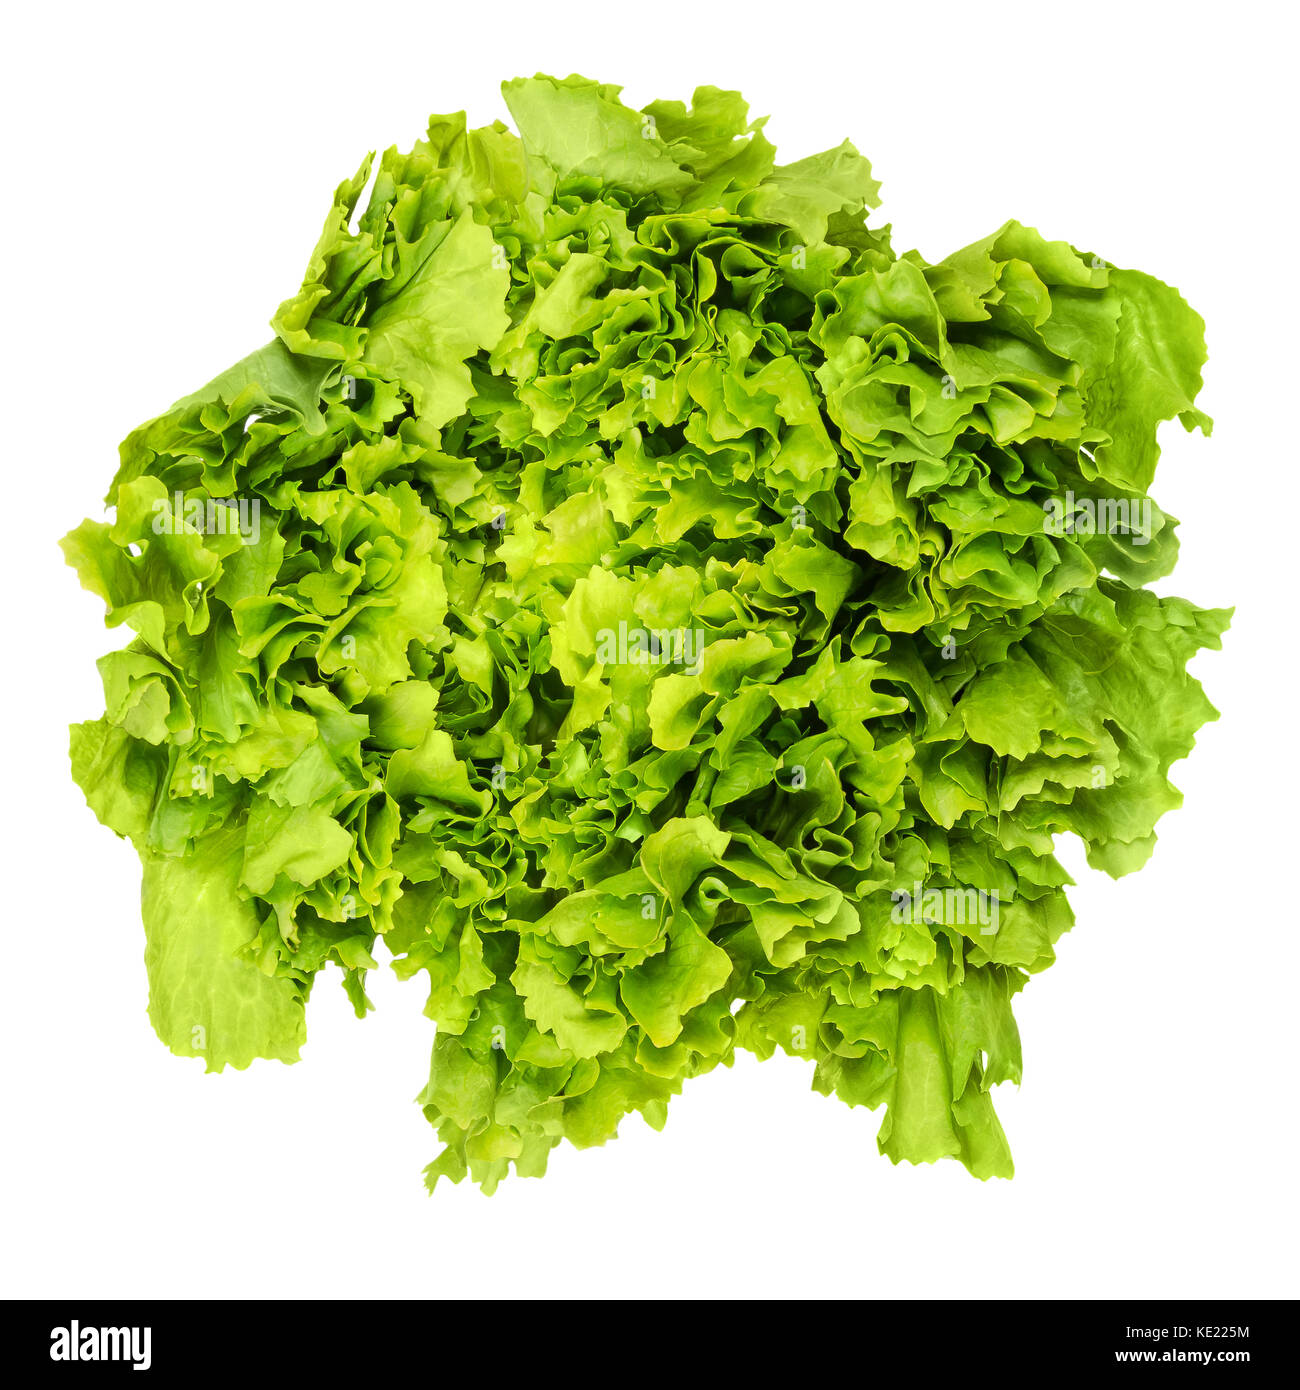 Salatköpfe endiviensalat von oben über Weiß. Blatt Gemüse und Salat mit breiten, bitter verlässt. cichorium endivie var Latifolia. grüner Salat Kopf. Stockfoto